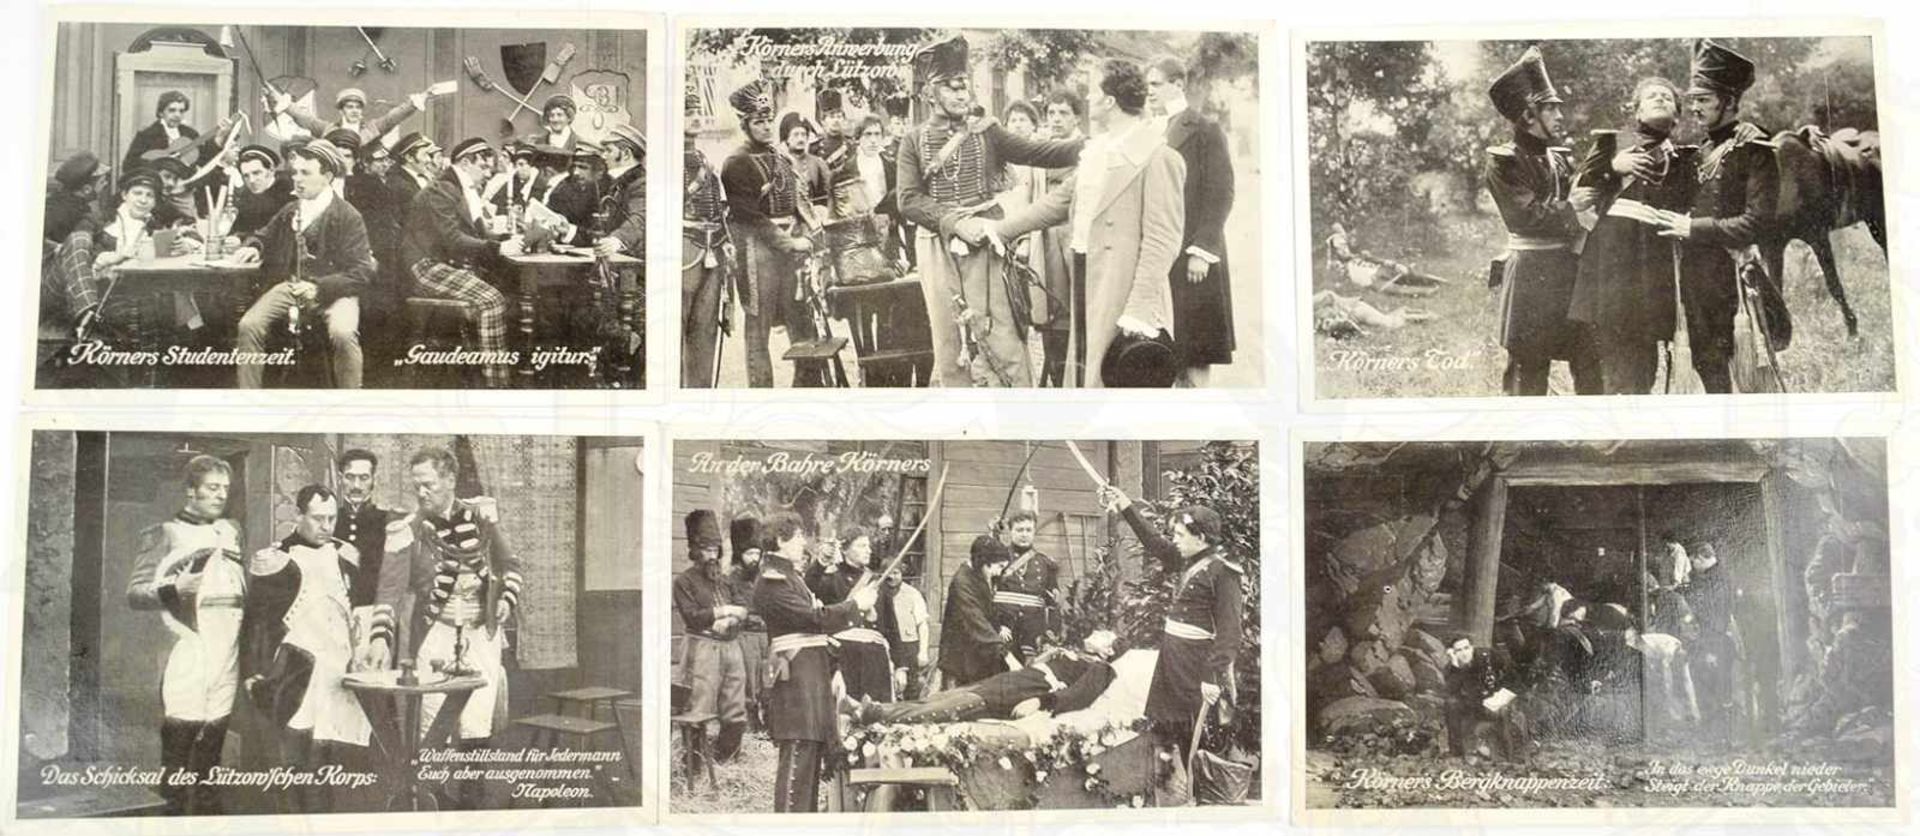 10 LICHTDRUCK-AK THEODOR KÖRNER EIN HELDENLEBEN, Verlag Baumann, Bln. 1913, Szenen aus seinem Leben,